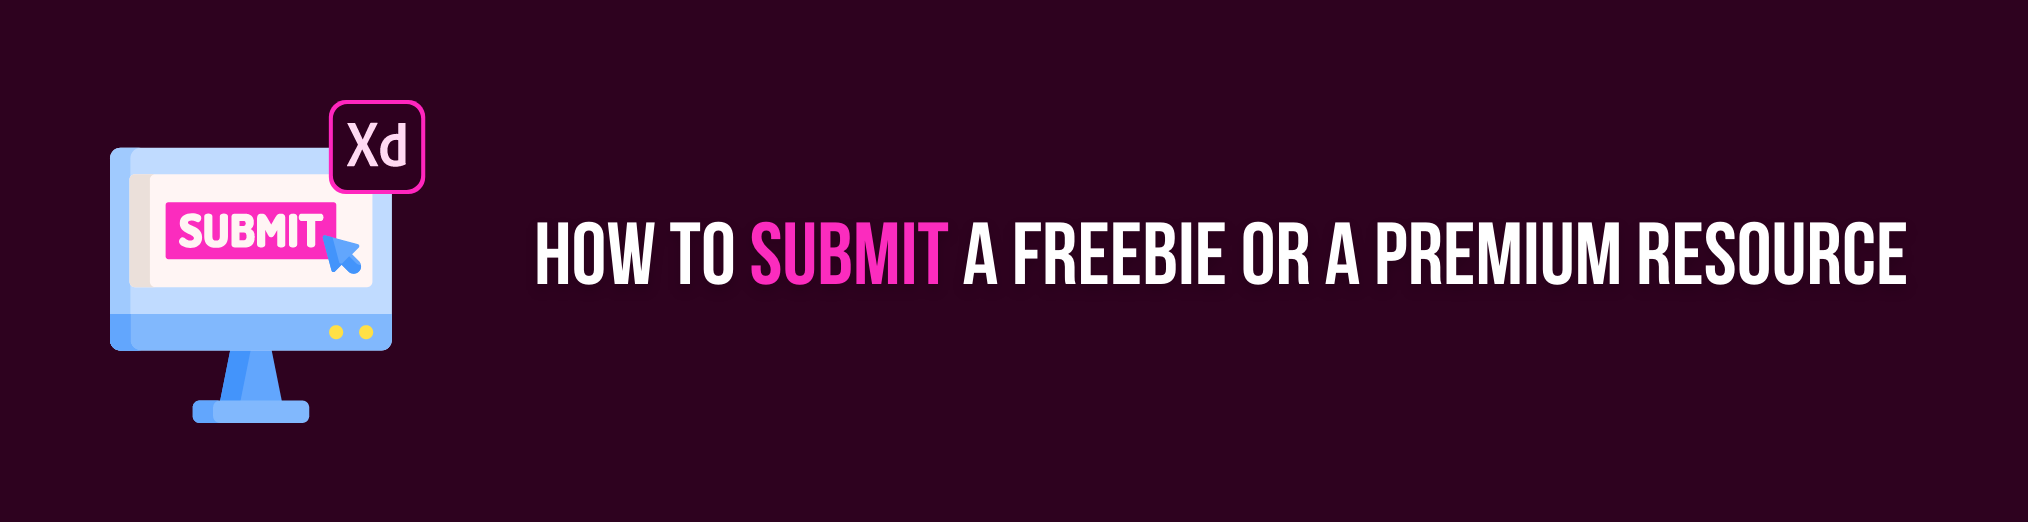 Submit xd freebie